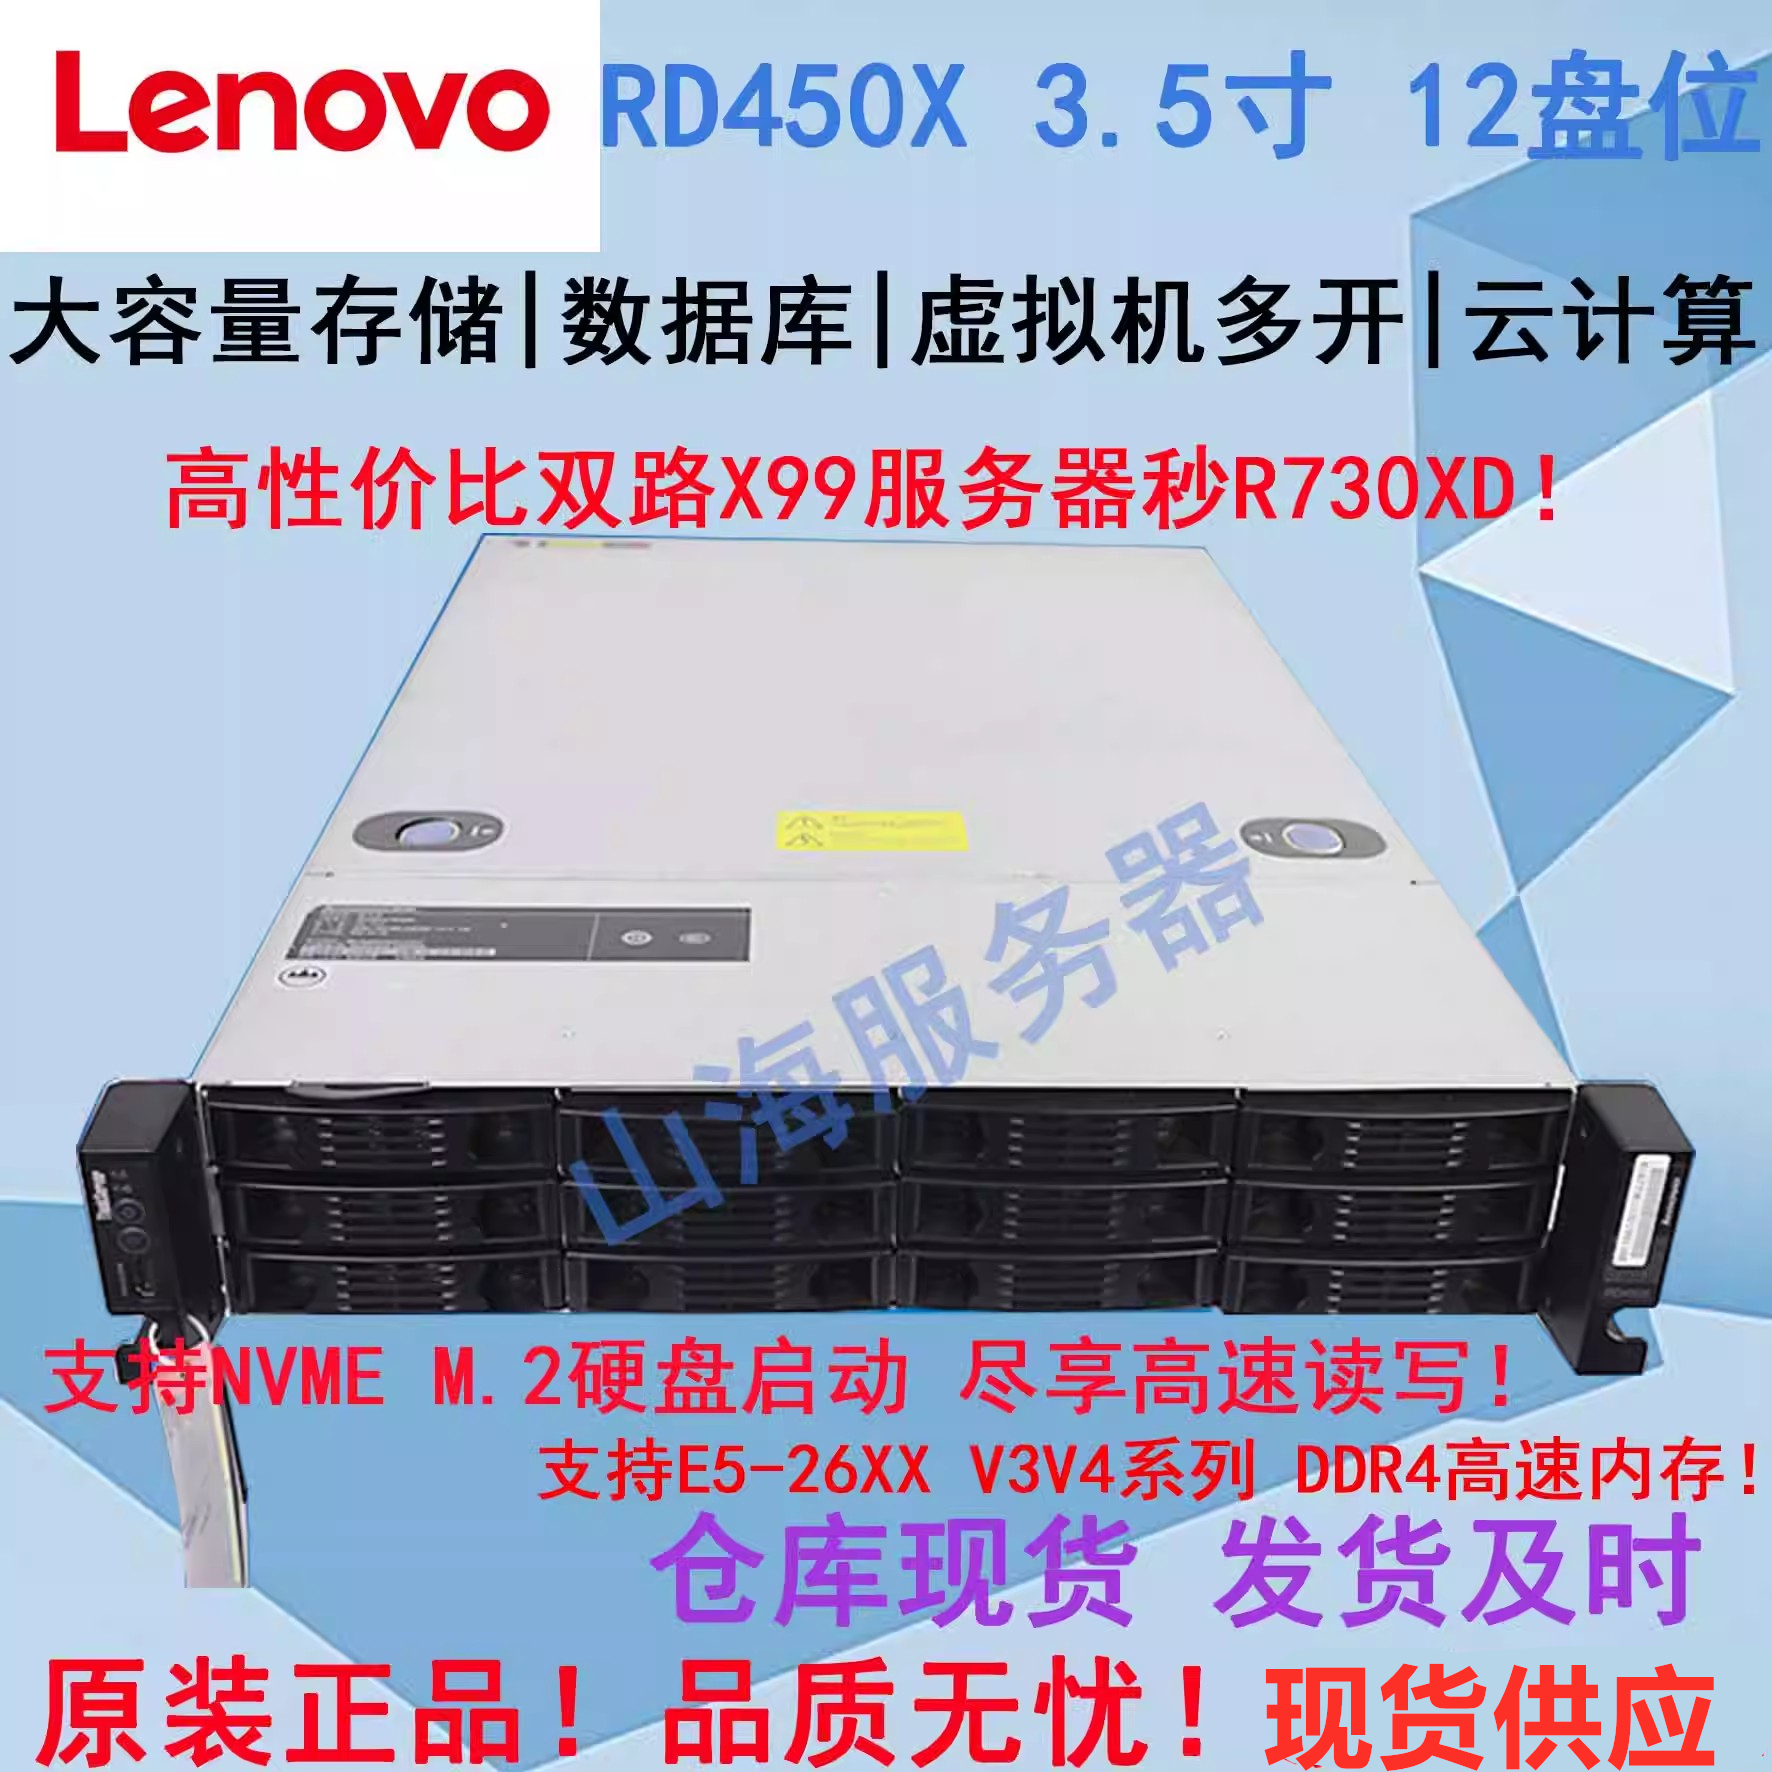 LENOVO RD450X  ä X99 2U  ȣƮ 12 ũ CDN SYNOLOGY M.2  DELL R730XD-